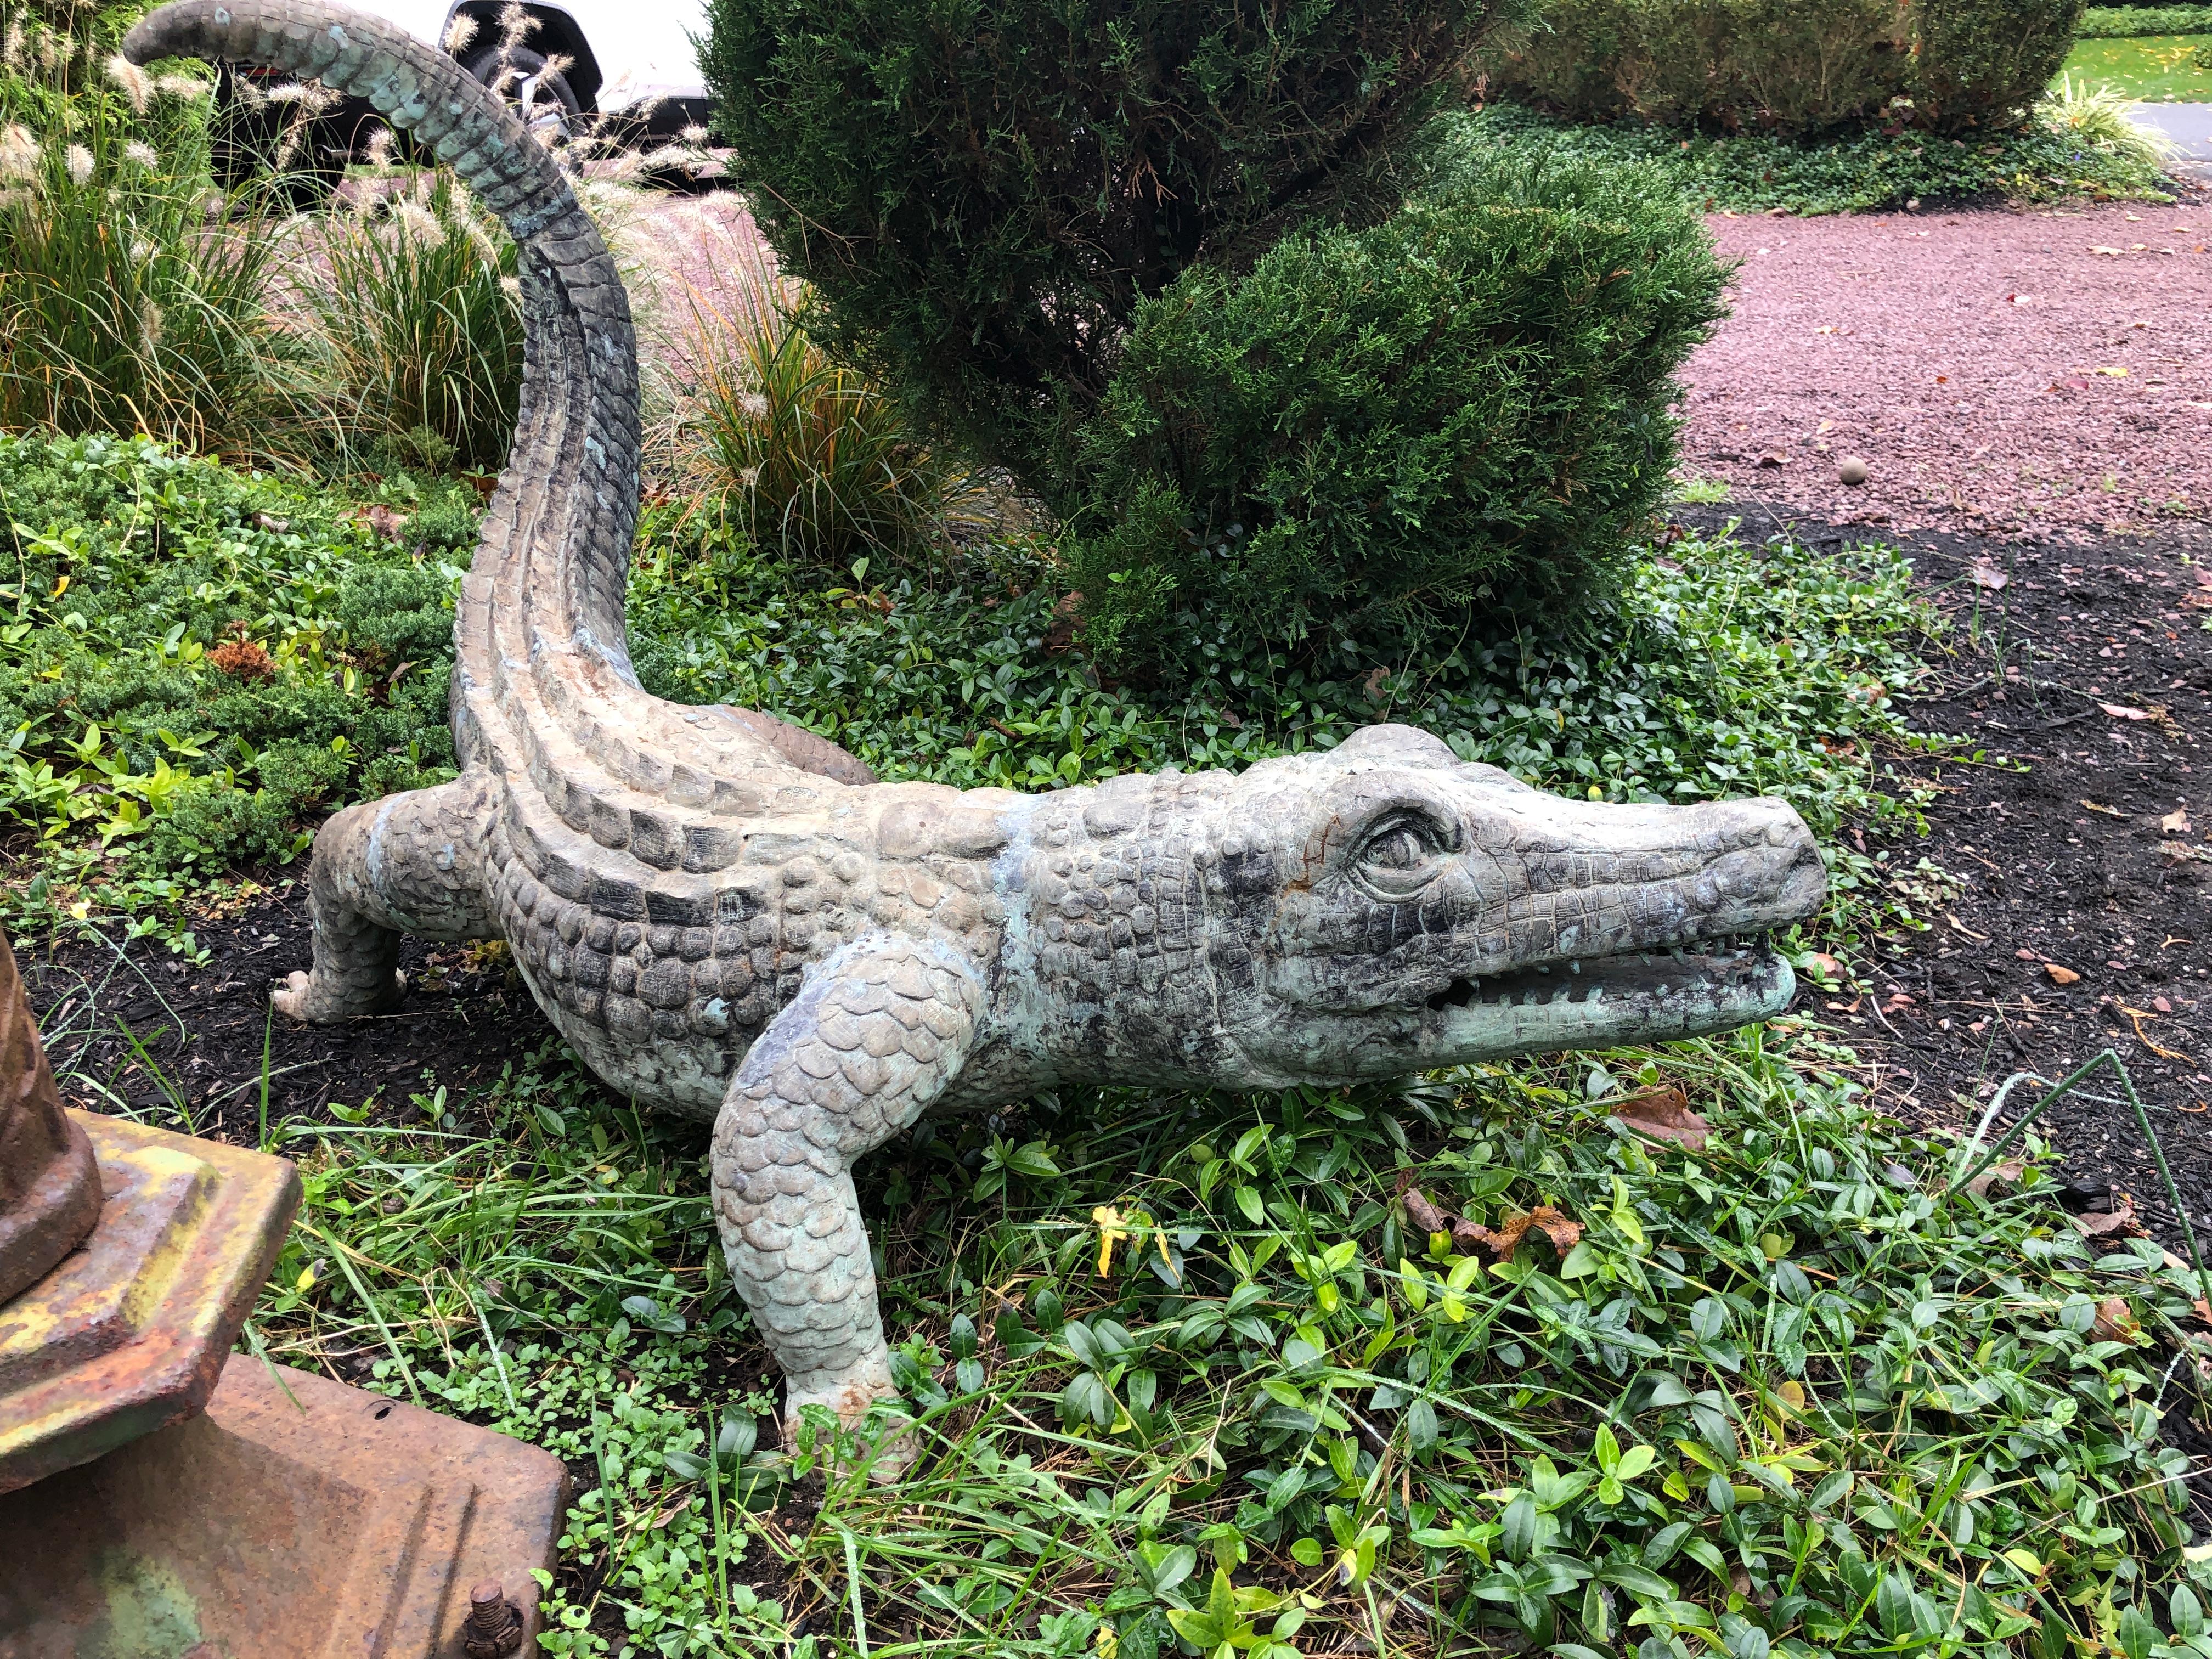 Beeindruckende und feine und Qualität Bronze Alligator mit schönen verwitterten grünen Patina. Gute Besetzung und Modellierung.
Maße: 27